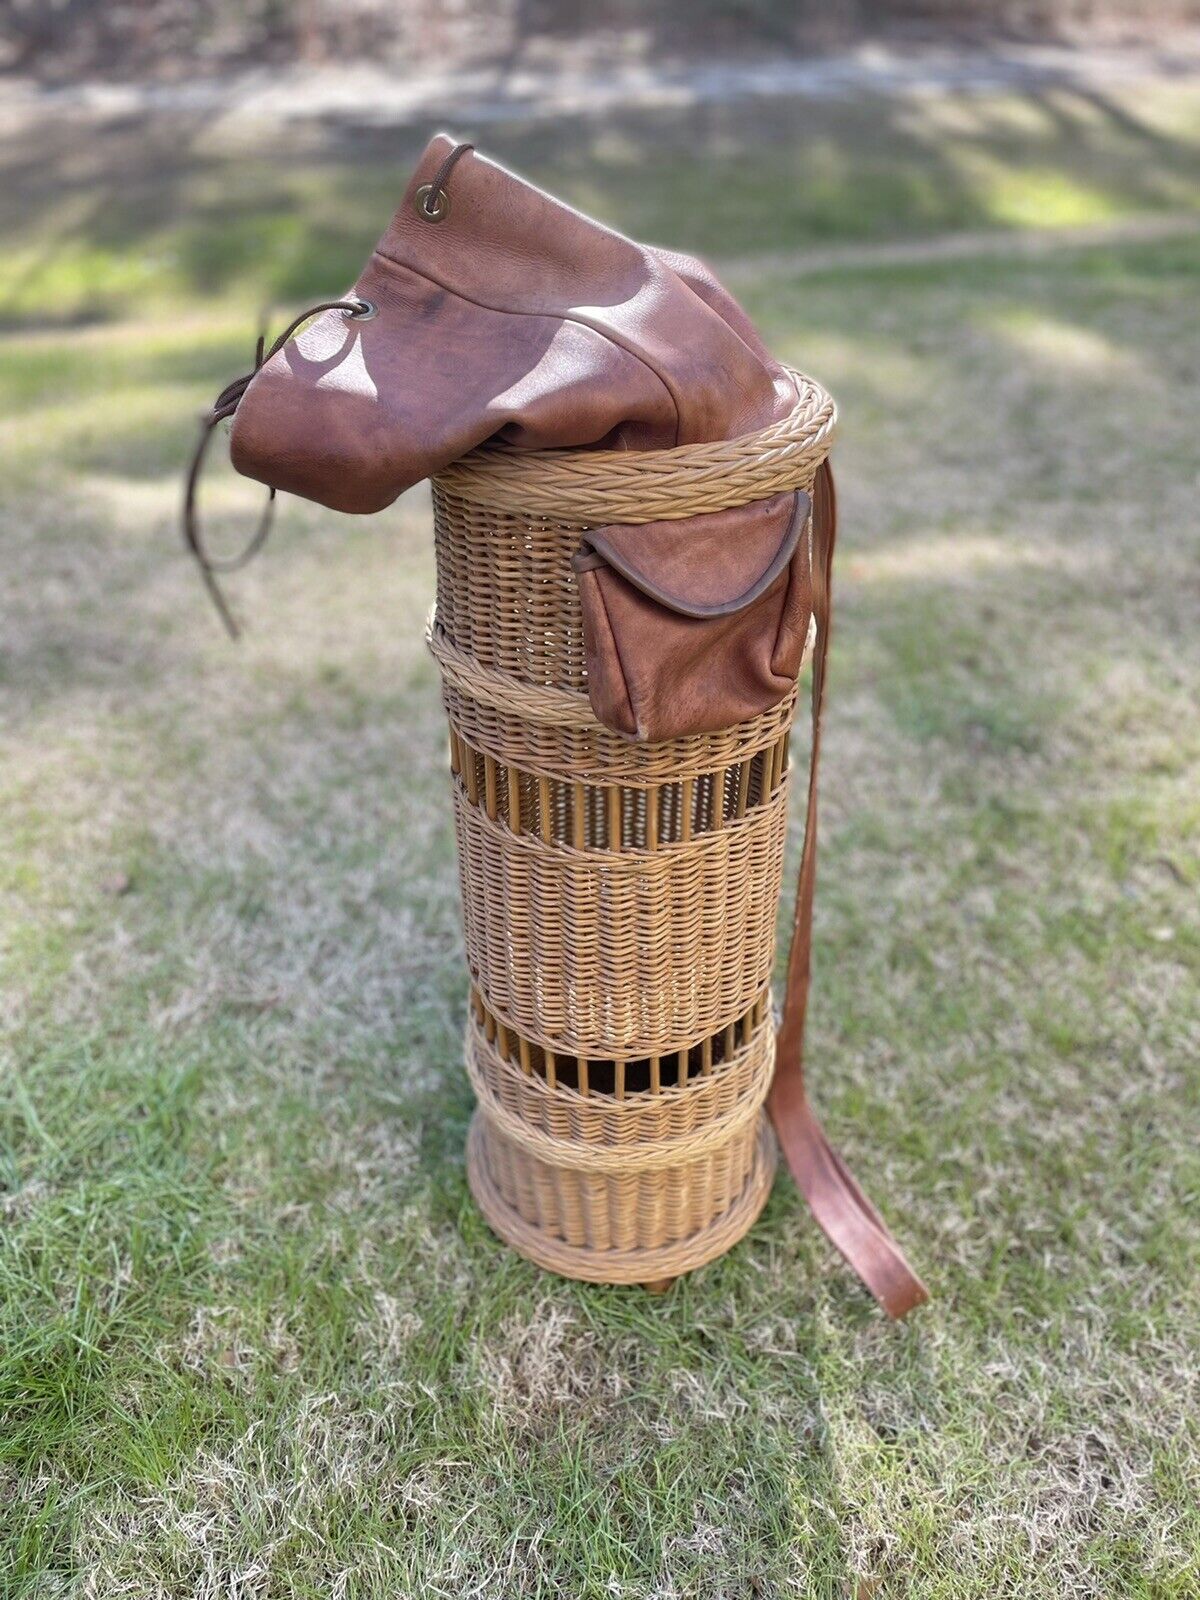 Vintage Hand Tooled Leather Golf Bag | eBay